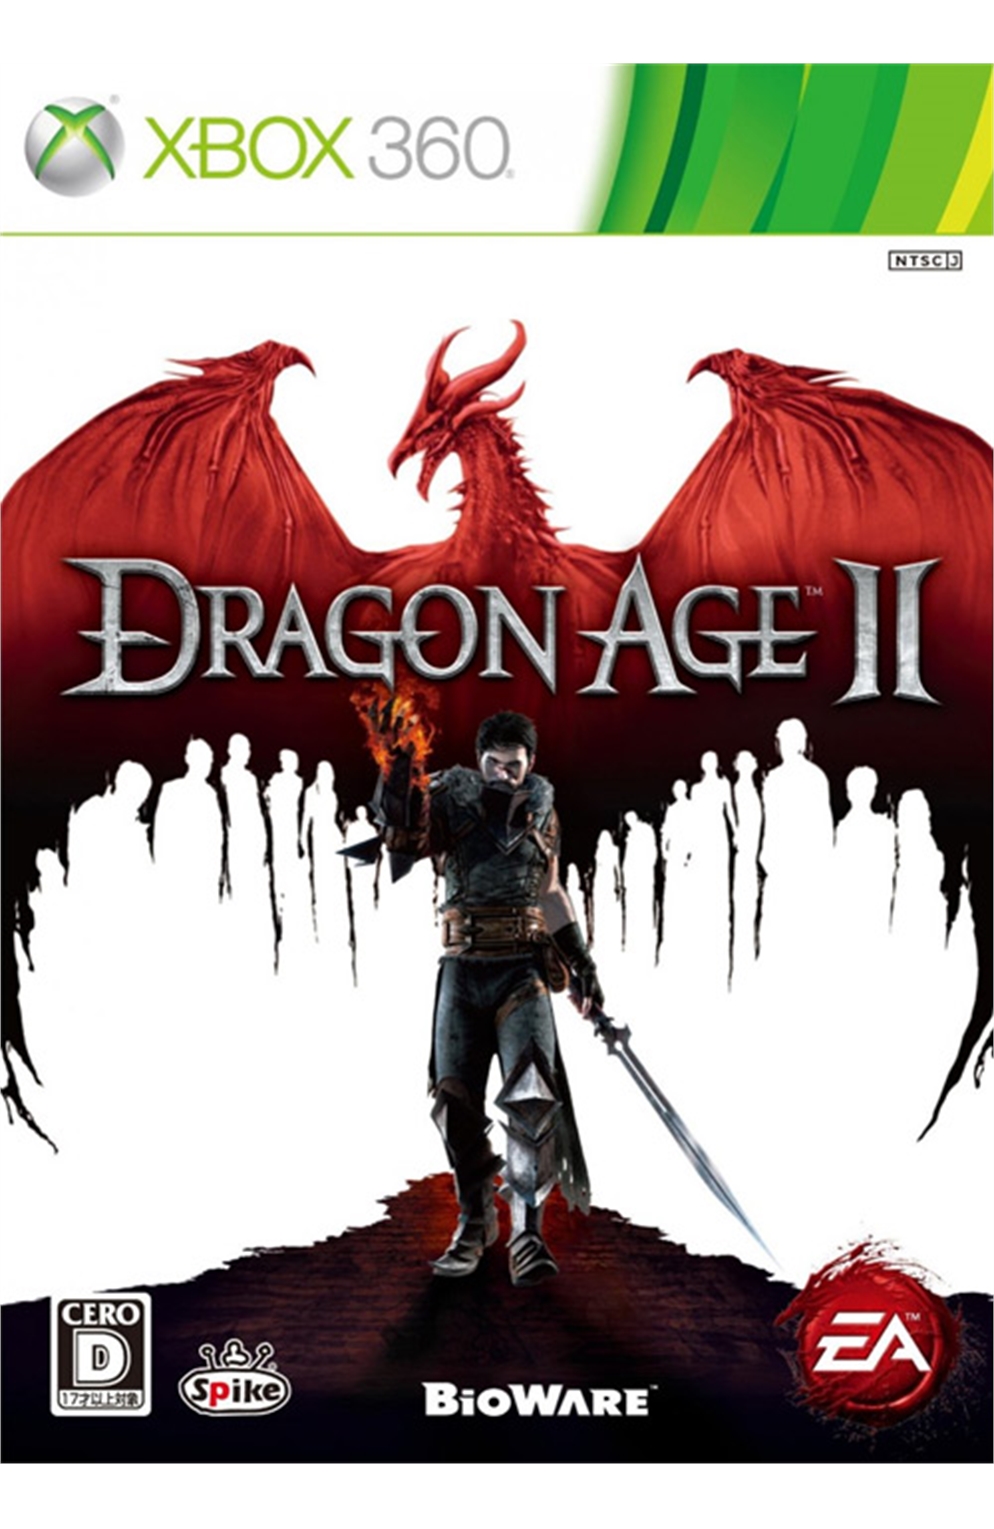 Xbox 360 Xb360 Dragon Age 2